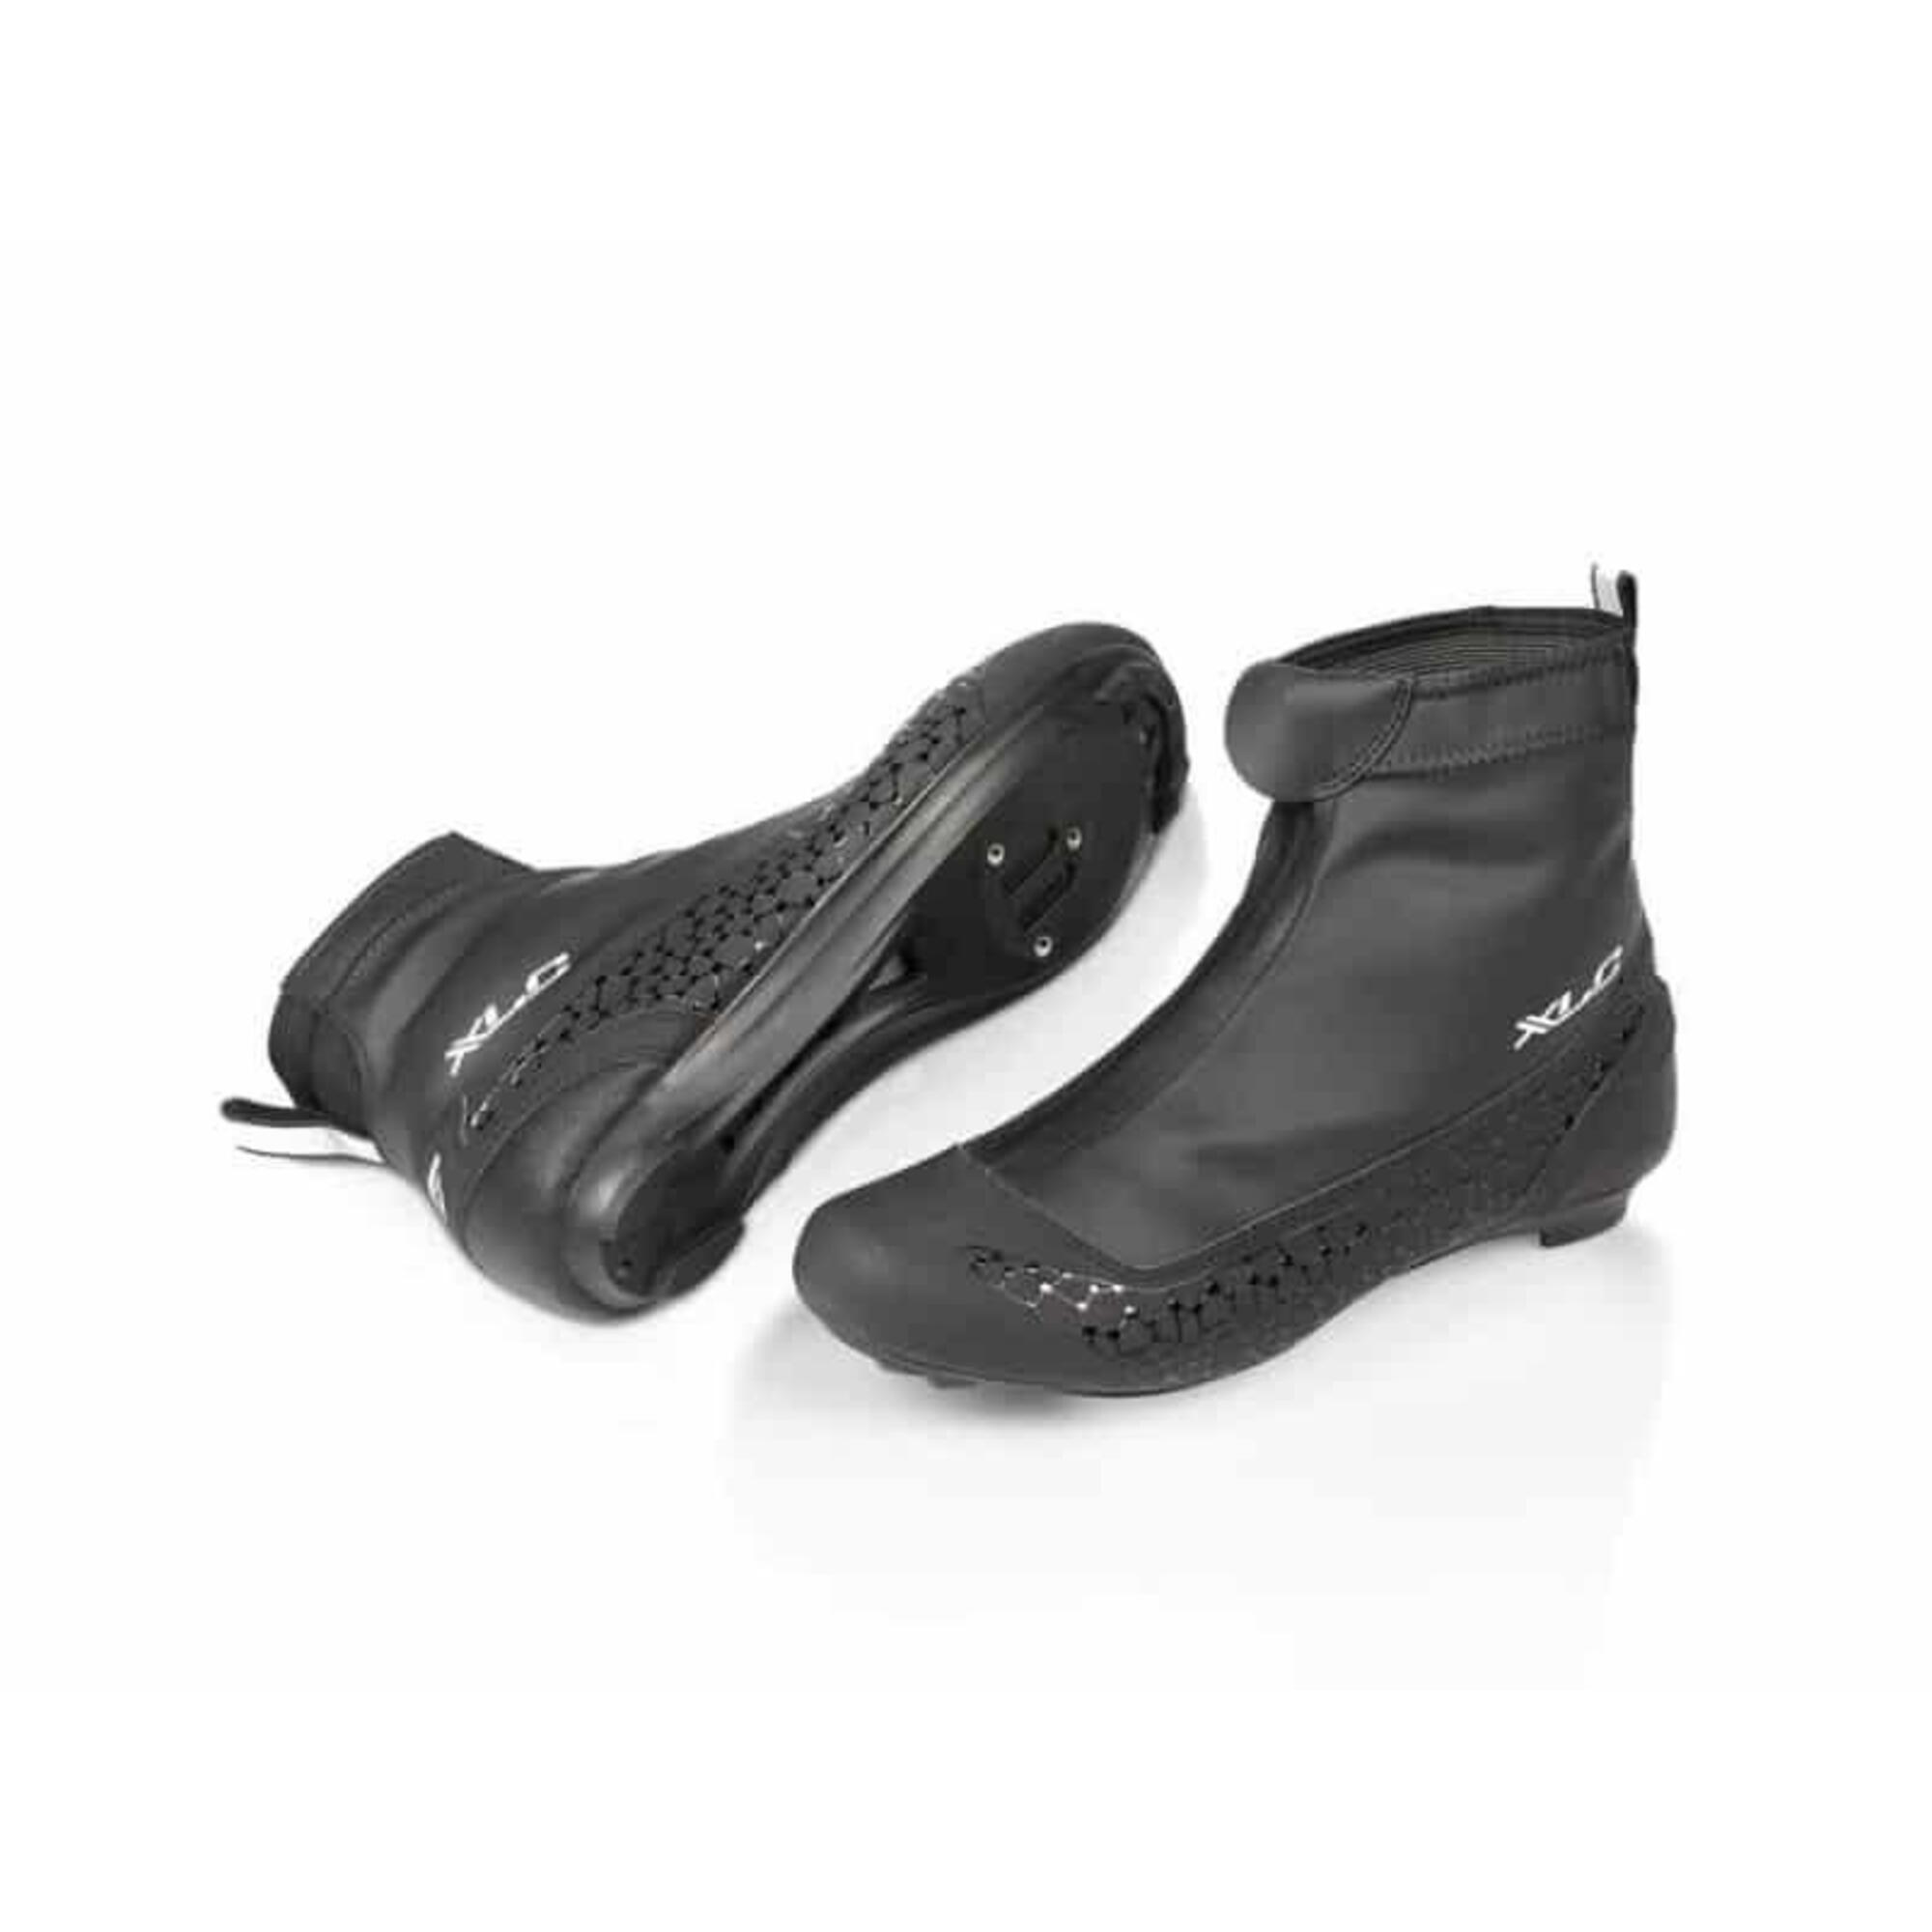 XLC Winter Cycling Shoe Noir